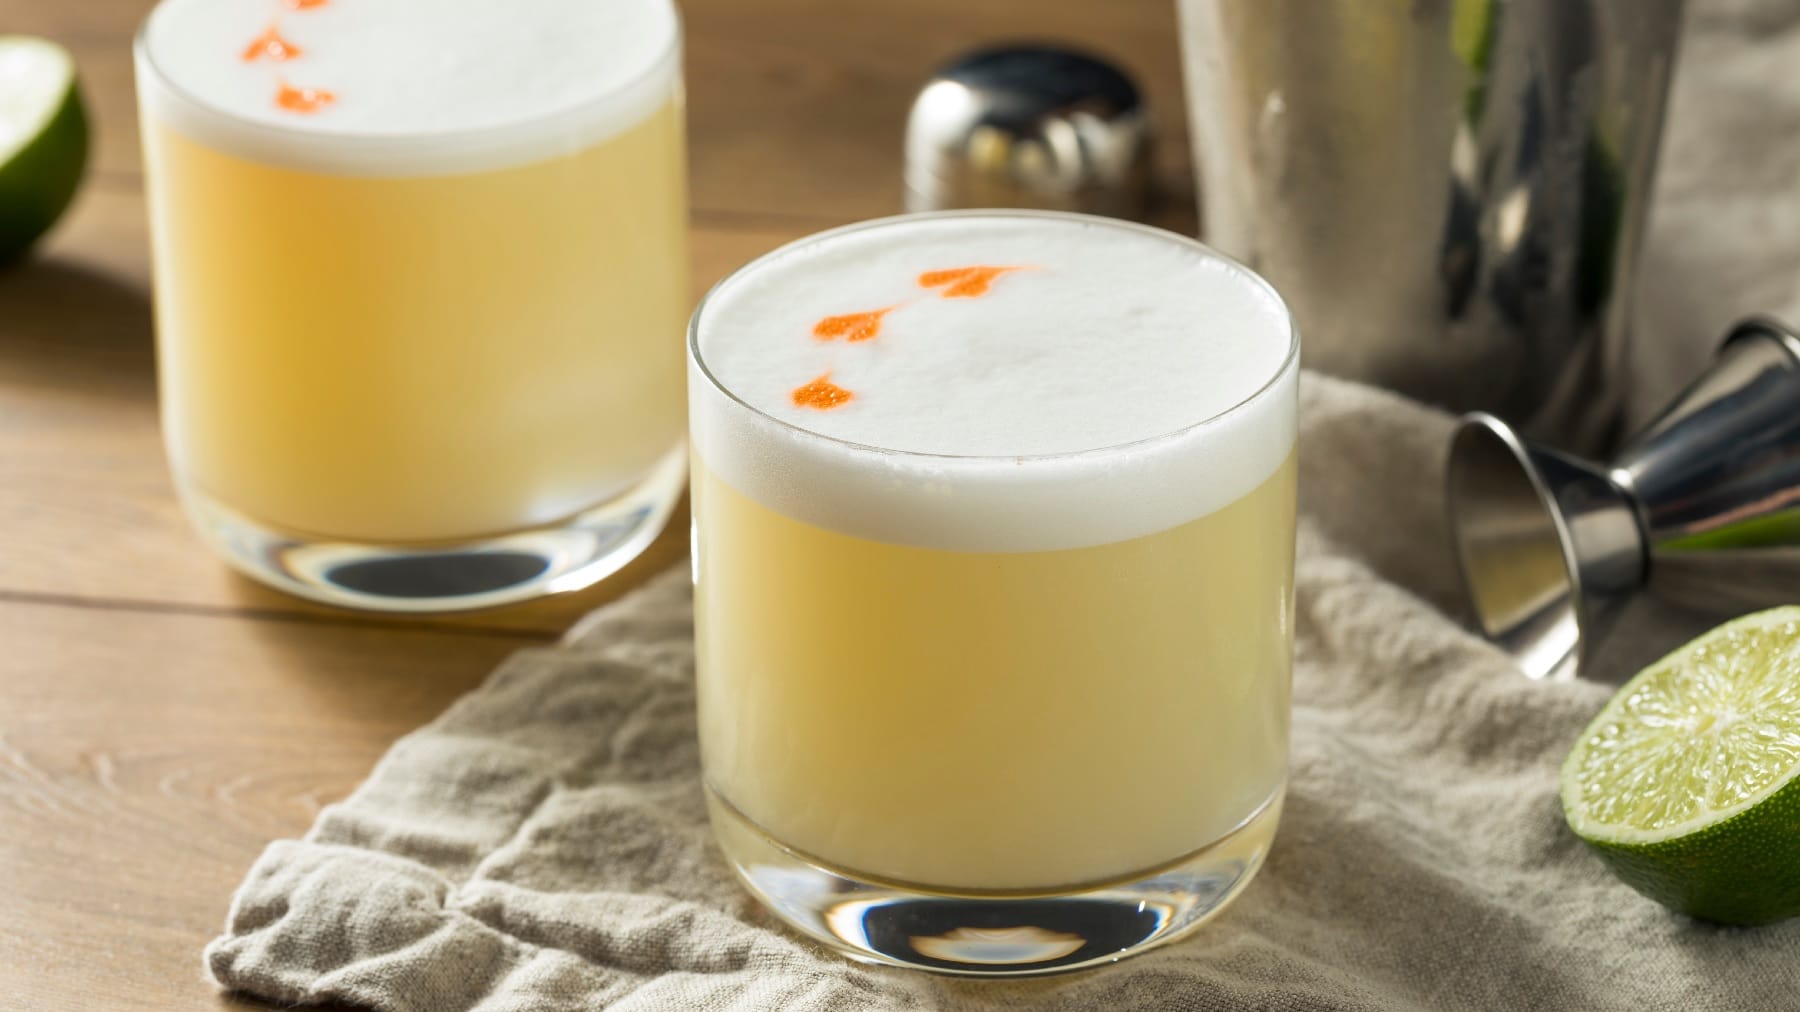 Zwei Gläser mit Pisco Sour auf einem Holztisch mit Limette und siulbernem Cocktail-Shaker.